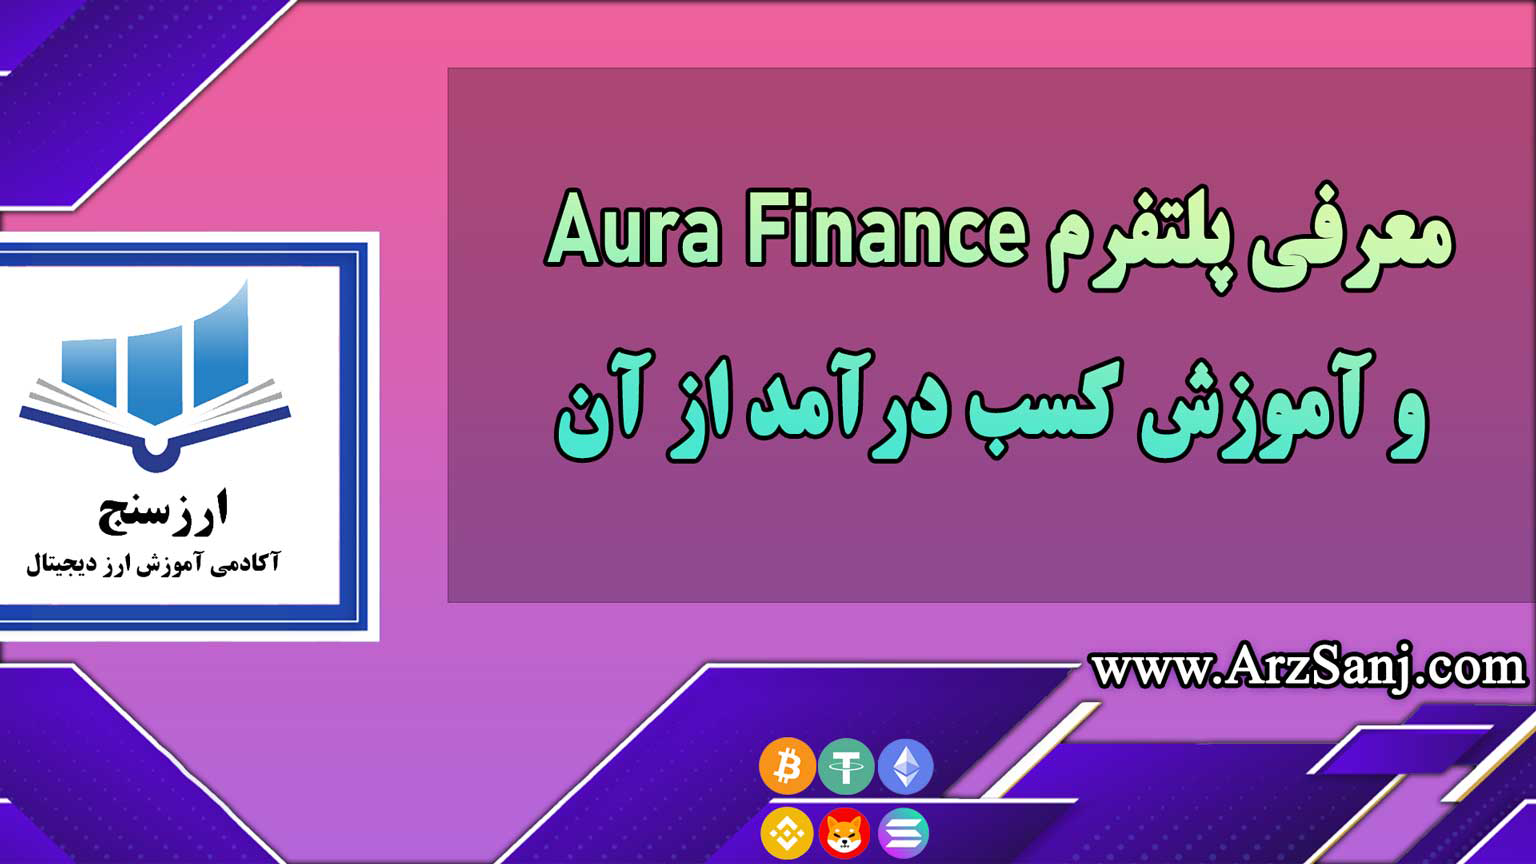 معرفی پلتفرم Aura Finance و آموزش کسب درآمد از آن